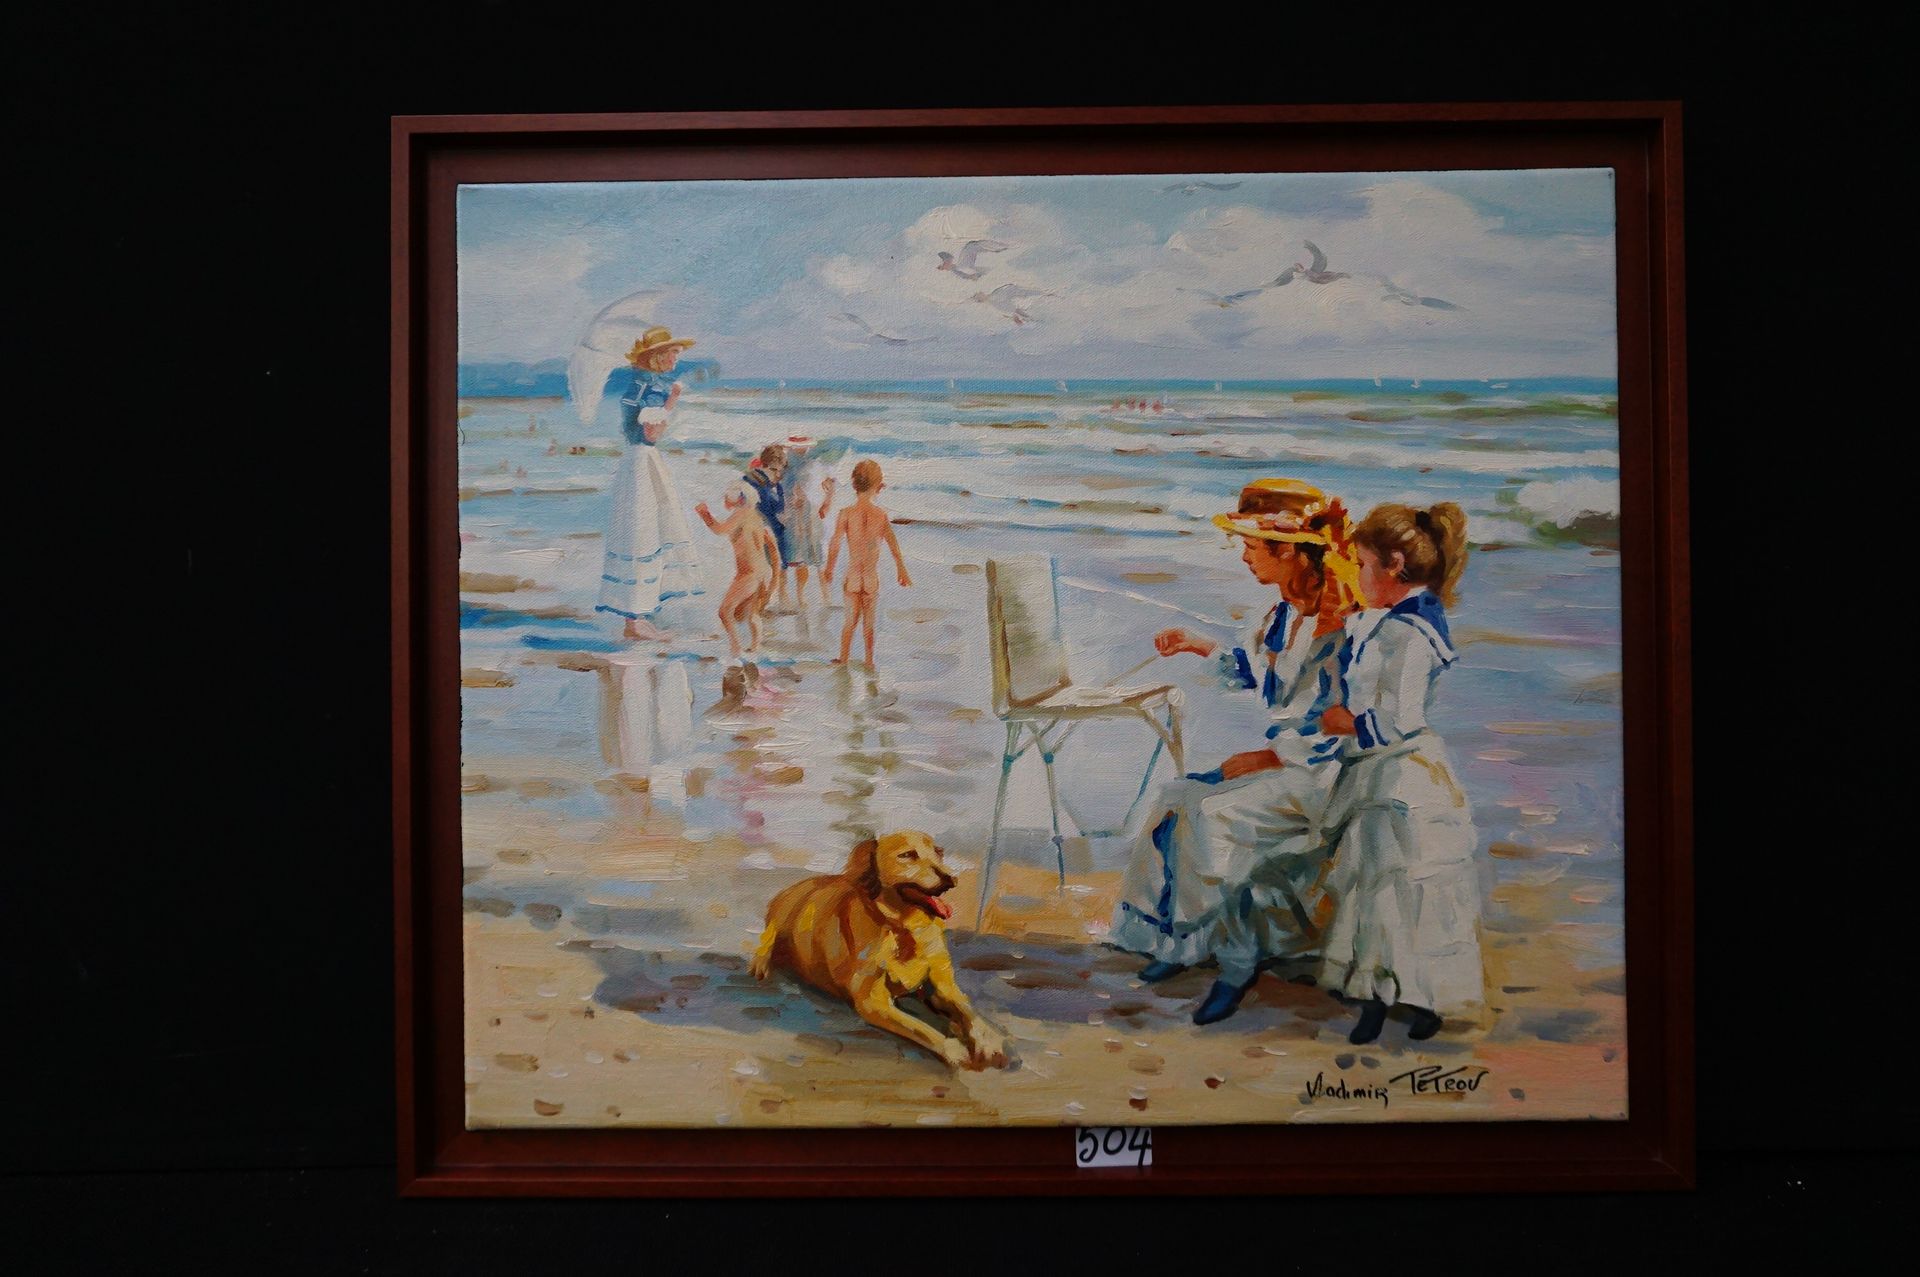 PETROV (1945 - ) "Dimanche sur la plage" - Huile sur toile - Signé - 50 x 60 cm